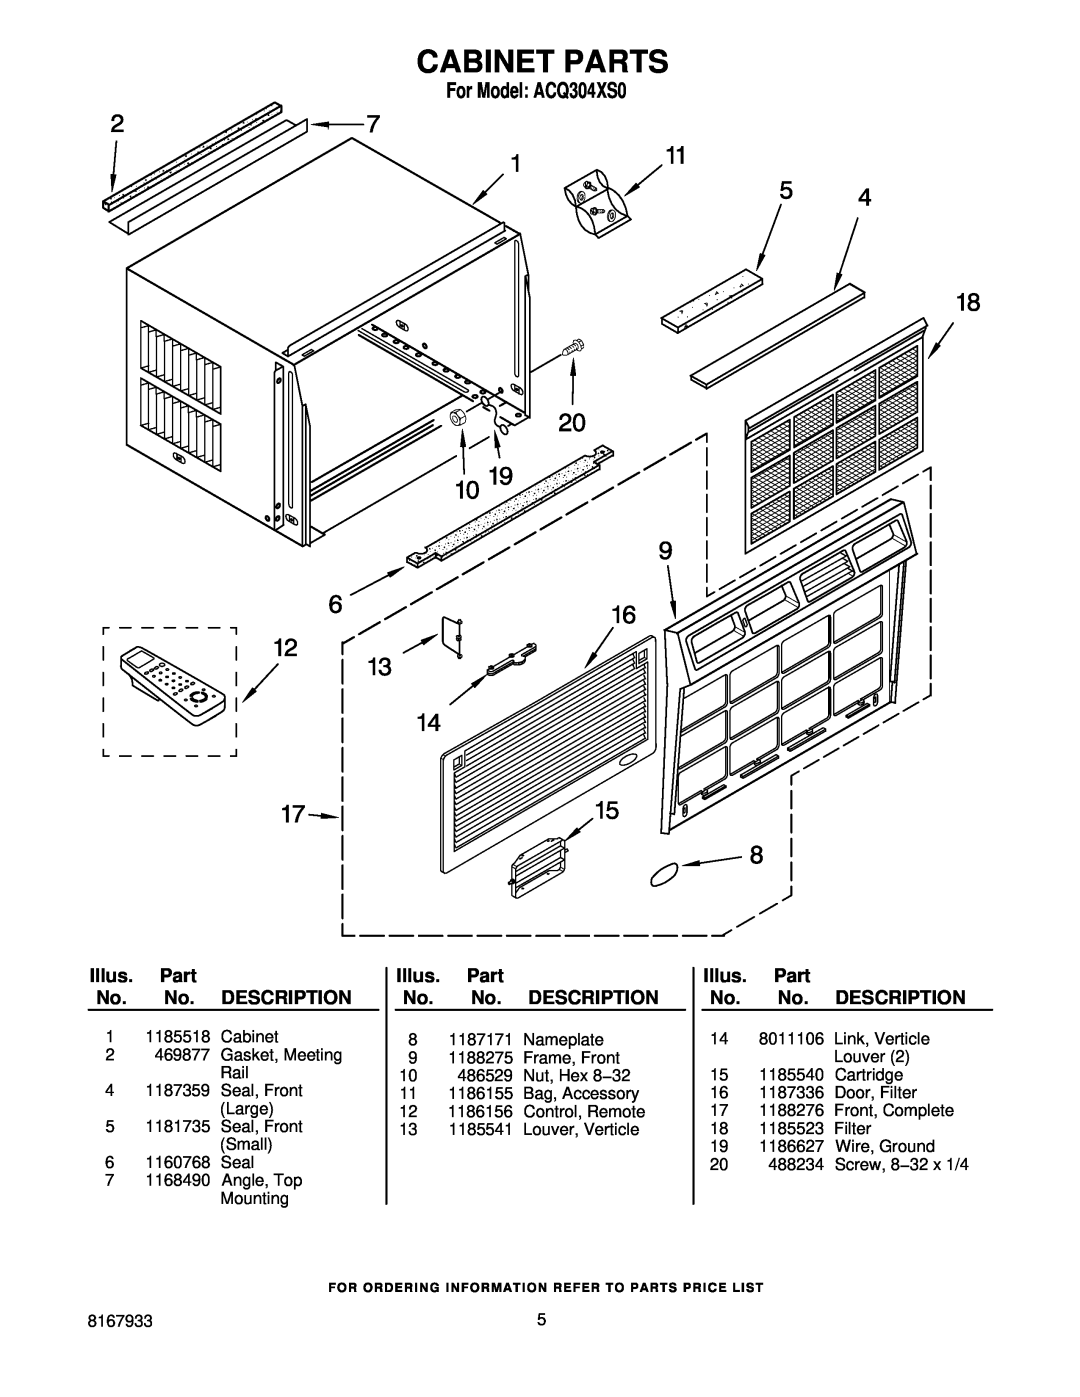 Whirlpool manual Cabinet Parts, For Model ACQ304XS0, Illus. Part No. No. DESCRIPTION 